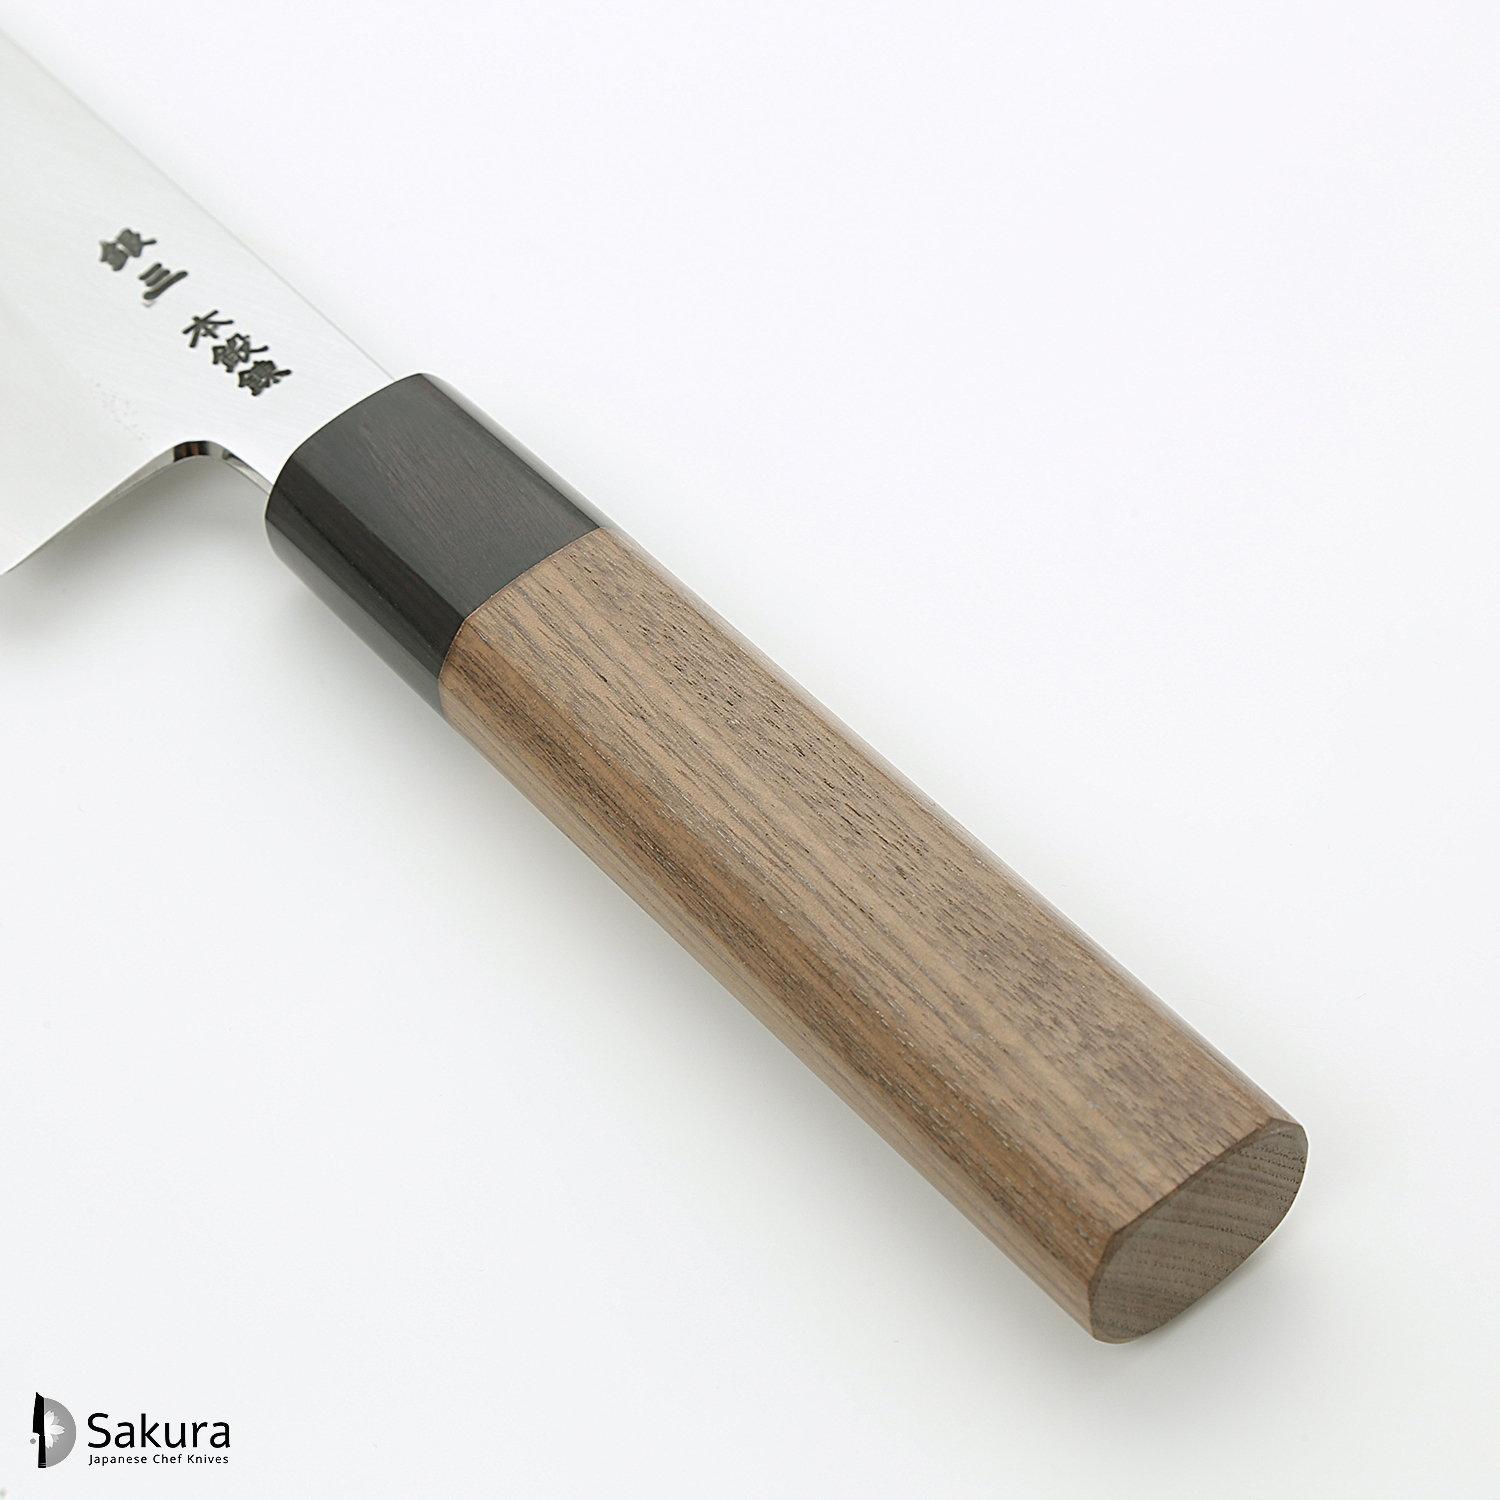 סכין שף רב-תכליתית גִּיוּטוֹ 240מ״מ מחושלת בעבודת יד 3 שכבות: פלדת פחמן יפנית מתקדמת מסוג Ginsan Silver#3 עטופה פלדת אל-חלד בגימור מט מלוטש גימור מט מלוטש האדו יפן